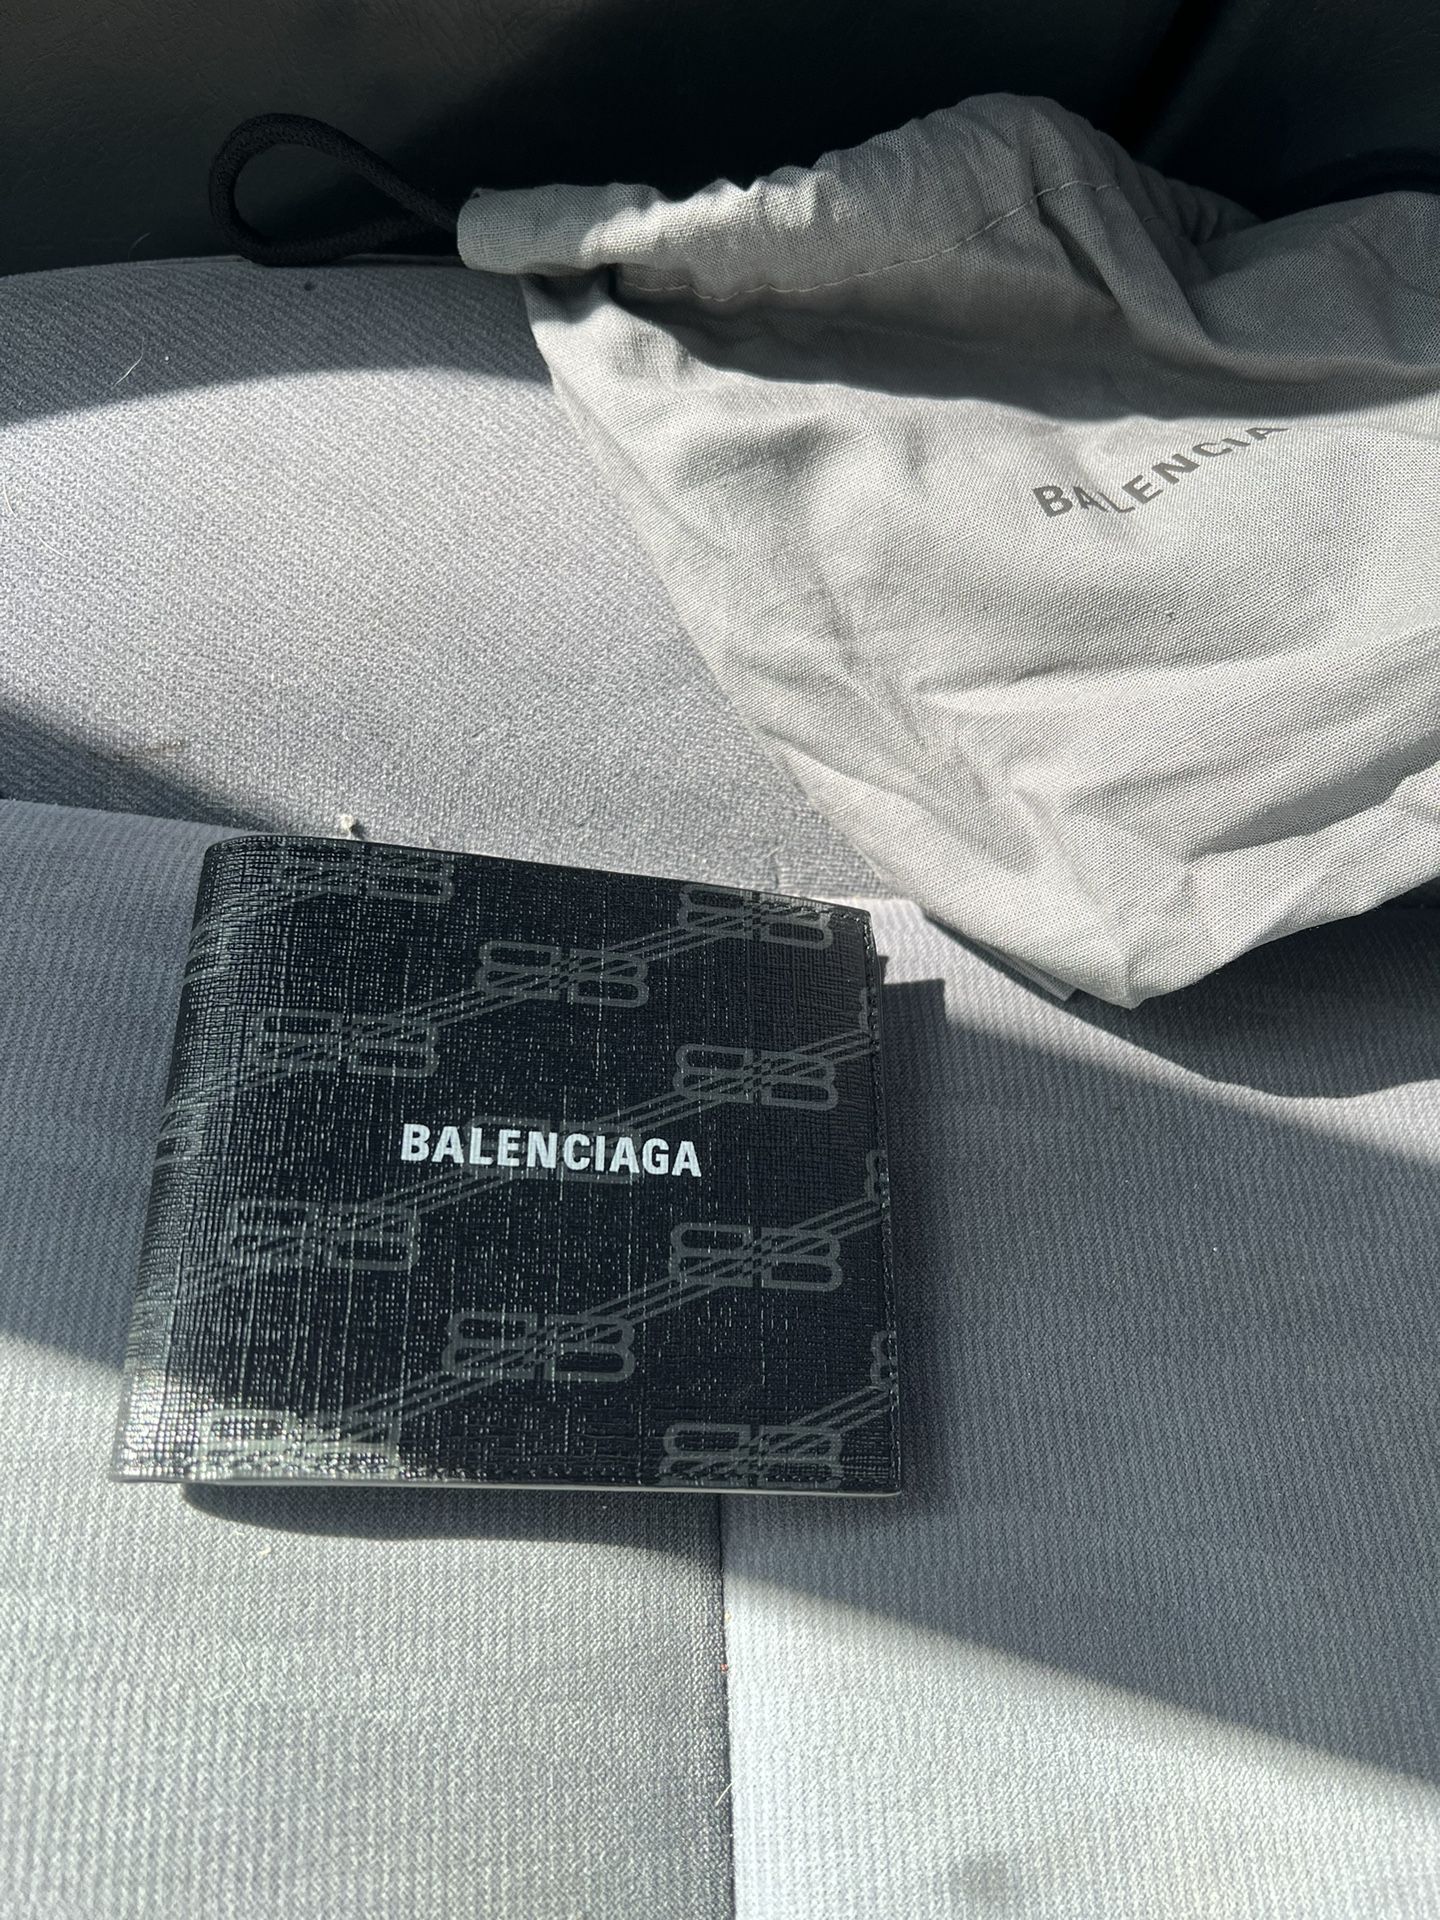 Balenciaga Wallet 